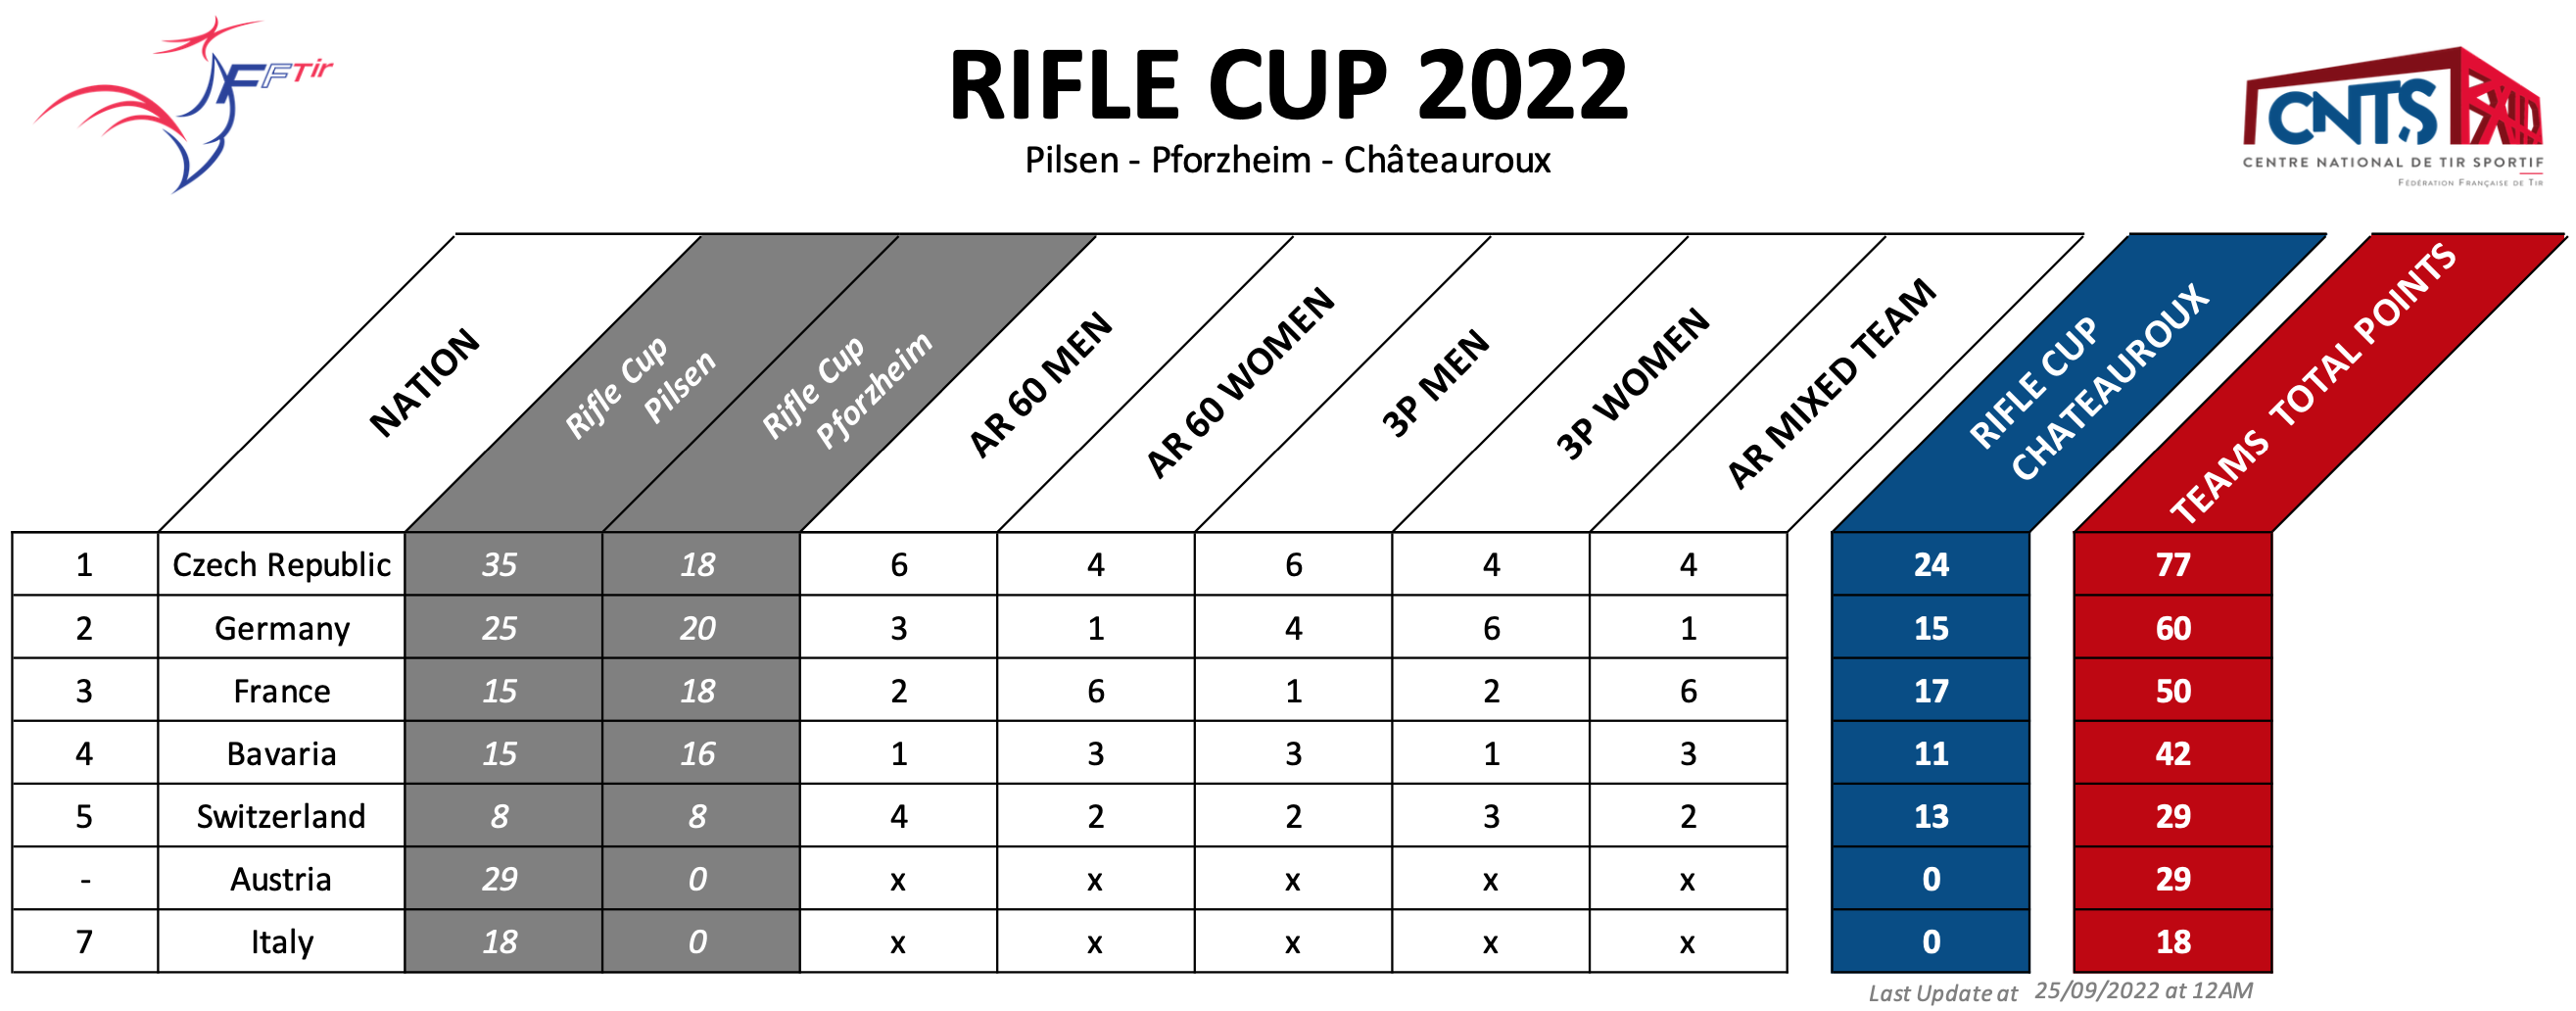 Classement définitif Rifle Cup 